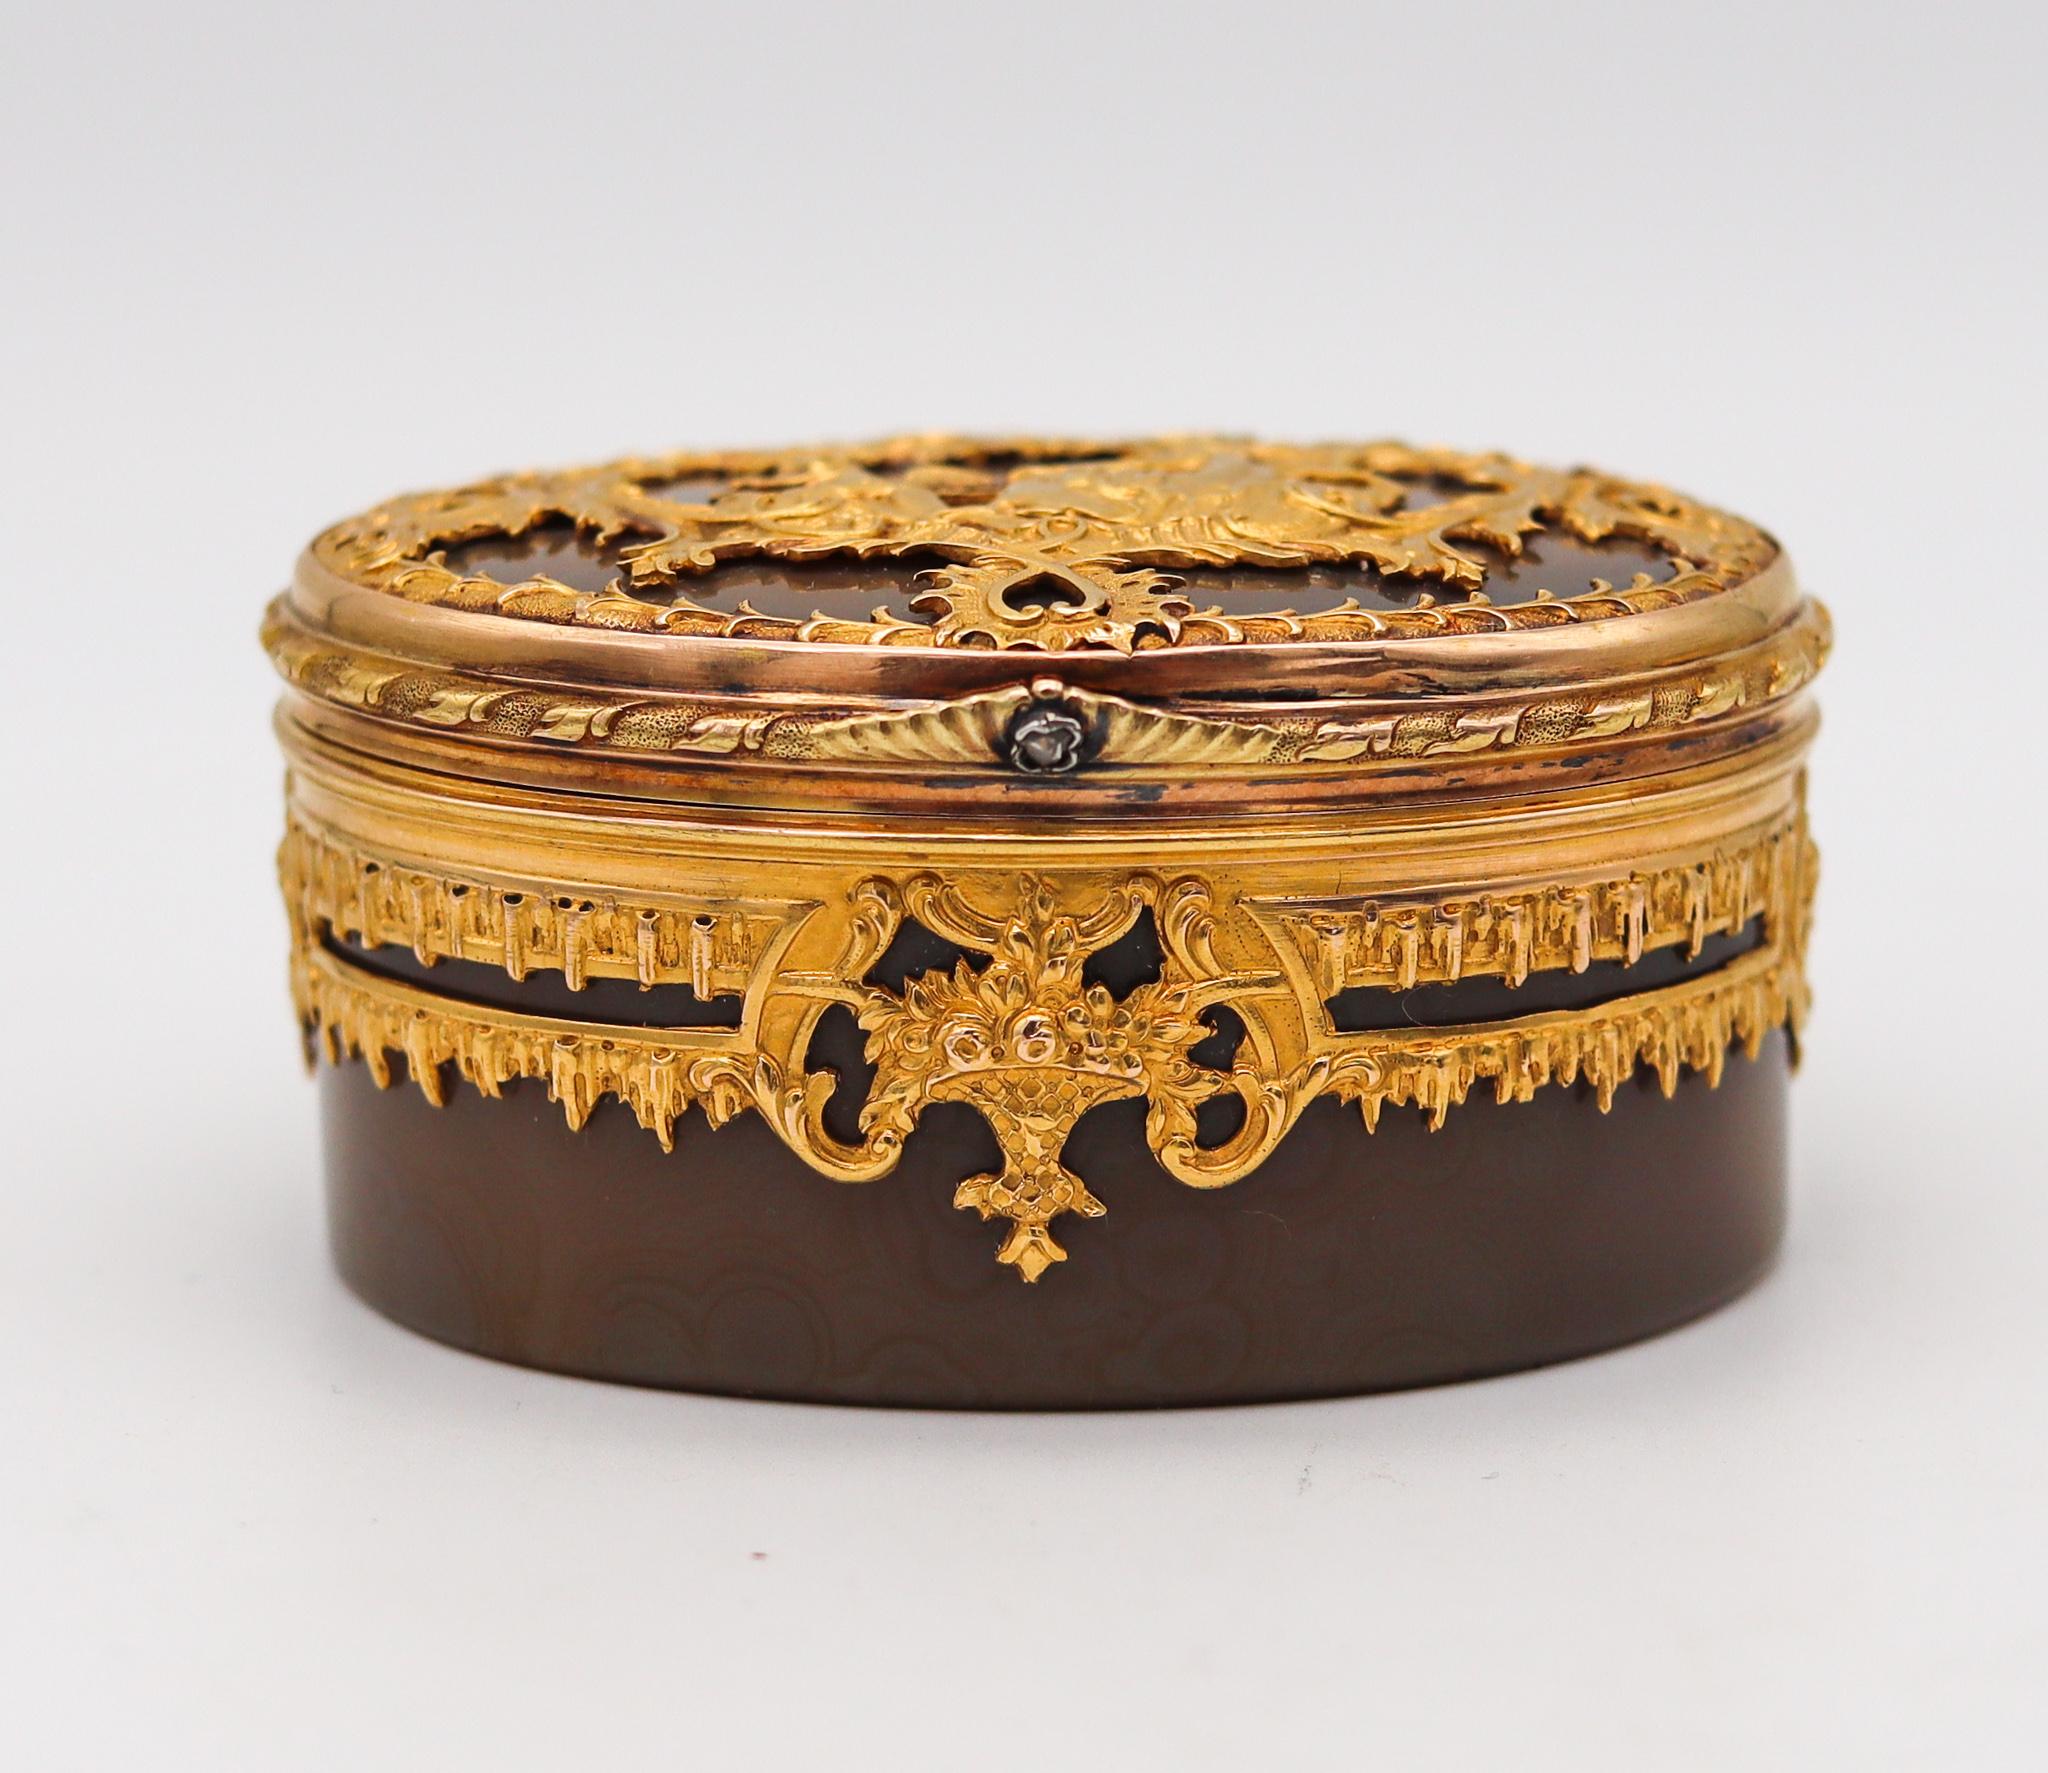 Französische Schnupftabakdose aus Achat und Gold.

Außergewöhnliche und sehr seltene ovale Schnupftabakdose, hergestellt in Paris Frankreich während der zweiten monarchischen Restaurationsperiode, zwischen 1818 und 1838. Diese wunderschöne Schachtel